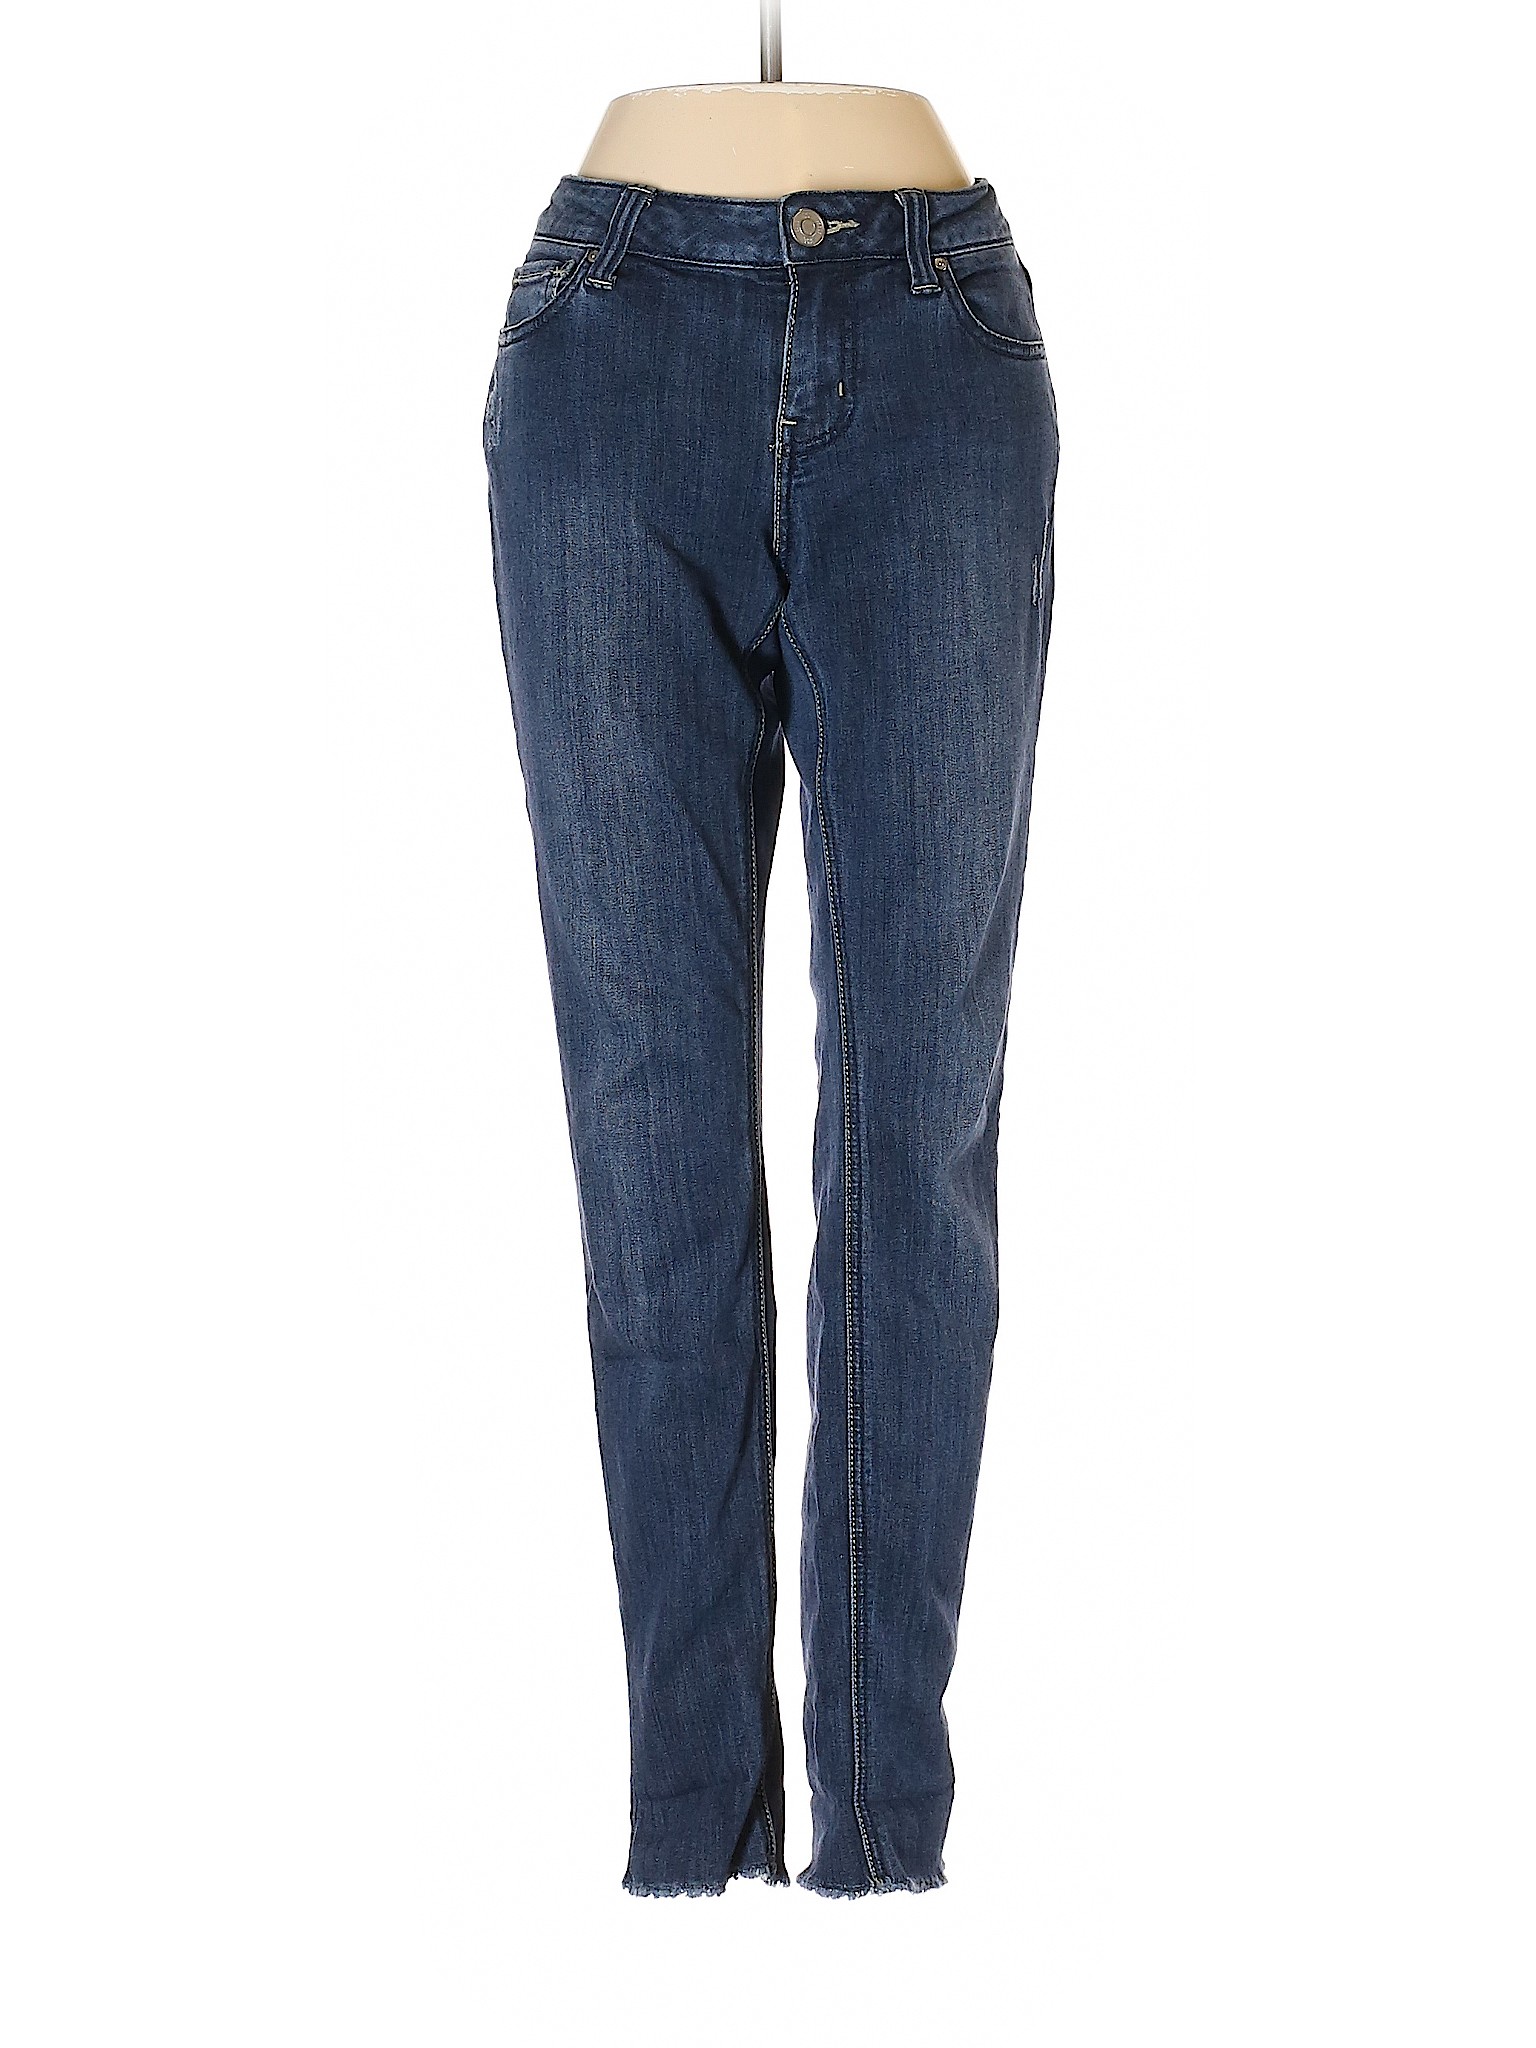 RSQ JEANS Women Blue Jeans 3 | eBay